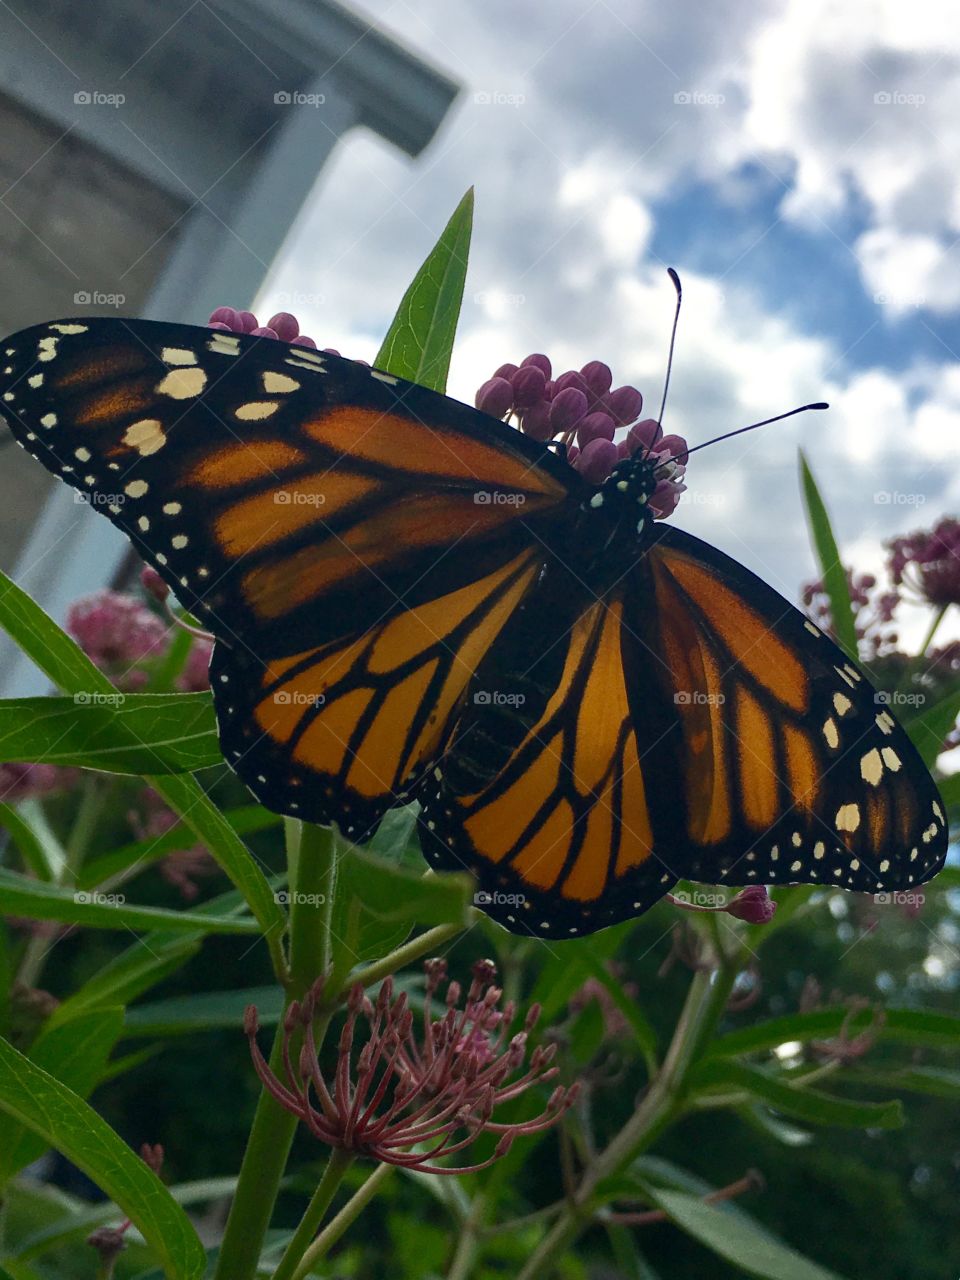 Monarch in the garden